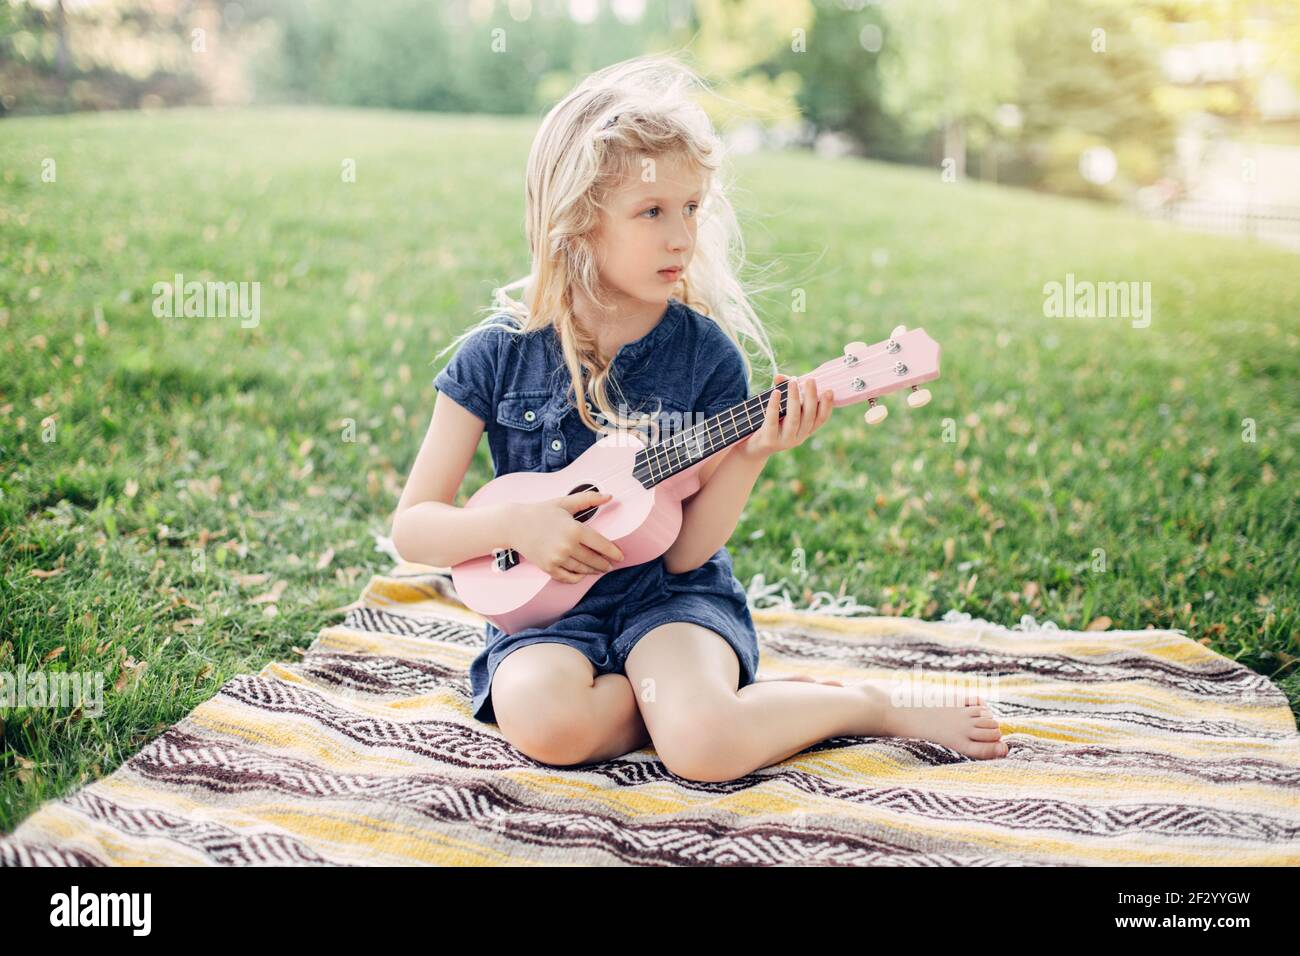 Süße liebenswert blonde Mädchen spielen rosa Gitarre Spielzeug im Freien. Kind spielt Musik und singt im Park. Hobby-Aktivität für Kinder Kinder. Ausschreibung Stockfoto